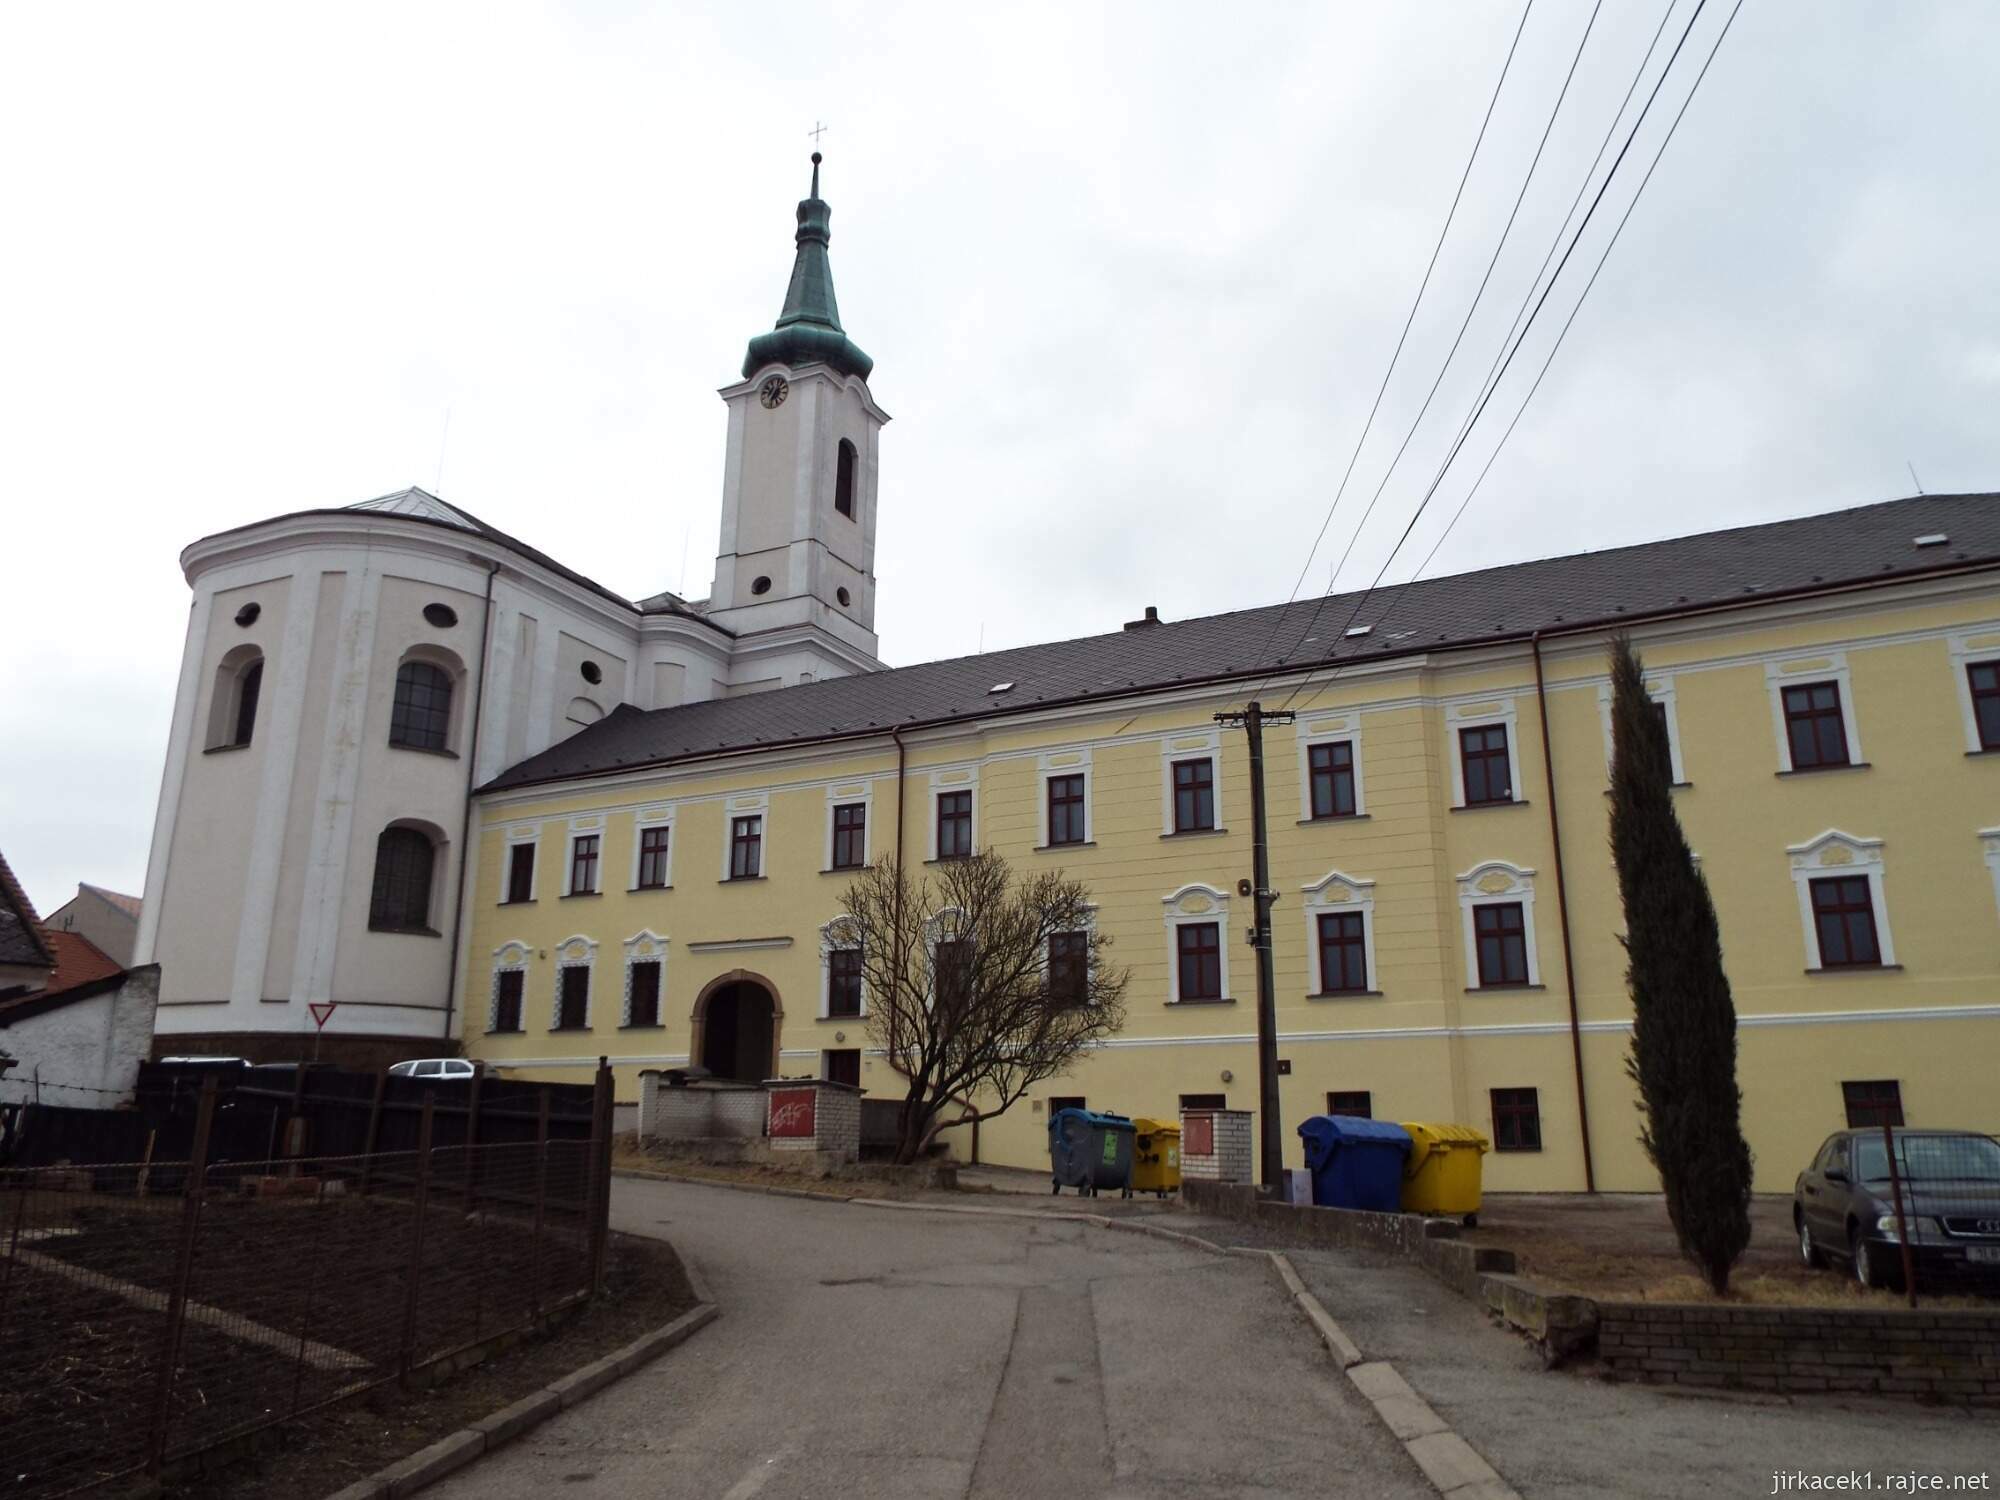 06 - Jevíčko - Kostel Nanebevzetí Panny Marie s klášterem Augustiánů 02